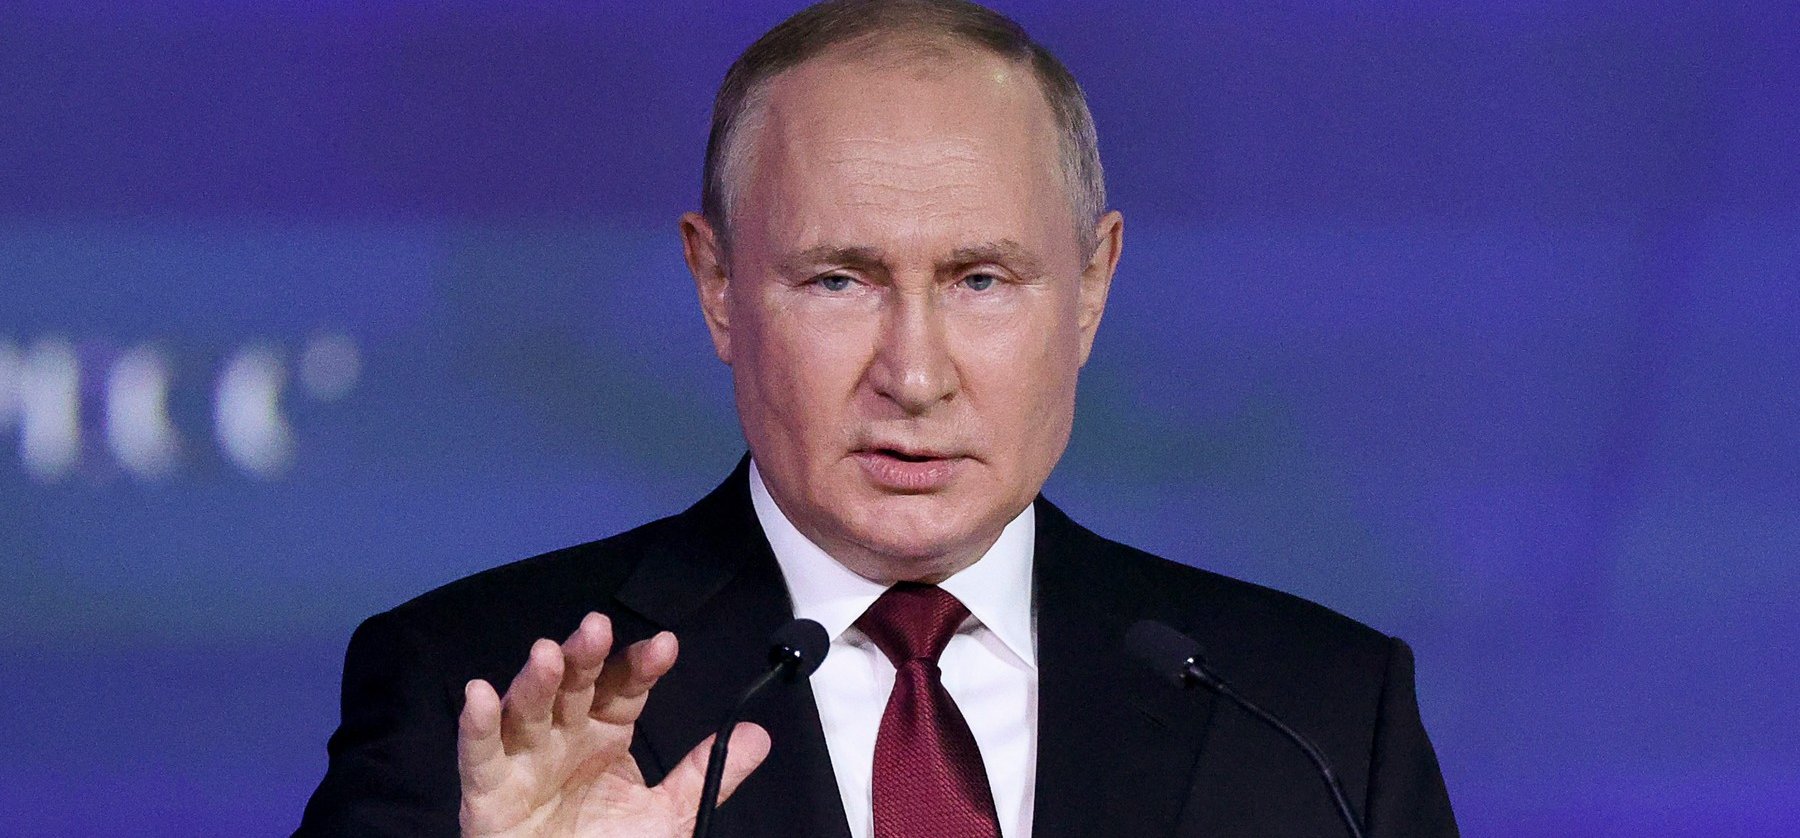 Putyin meghökkentő dolgokat mondott Ukrajnáról - Készen áll a békére?